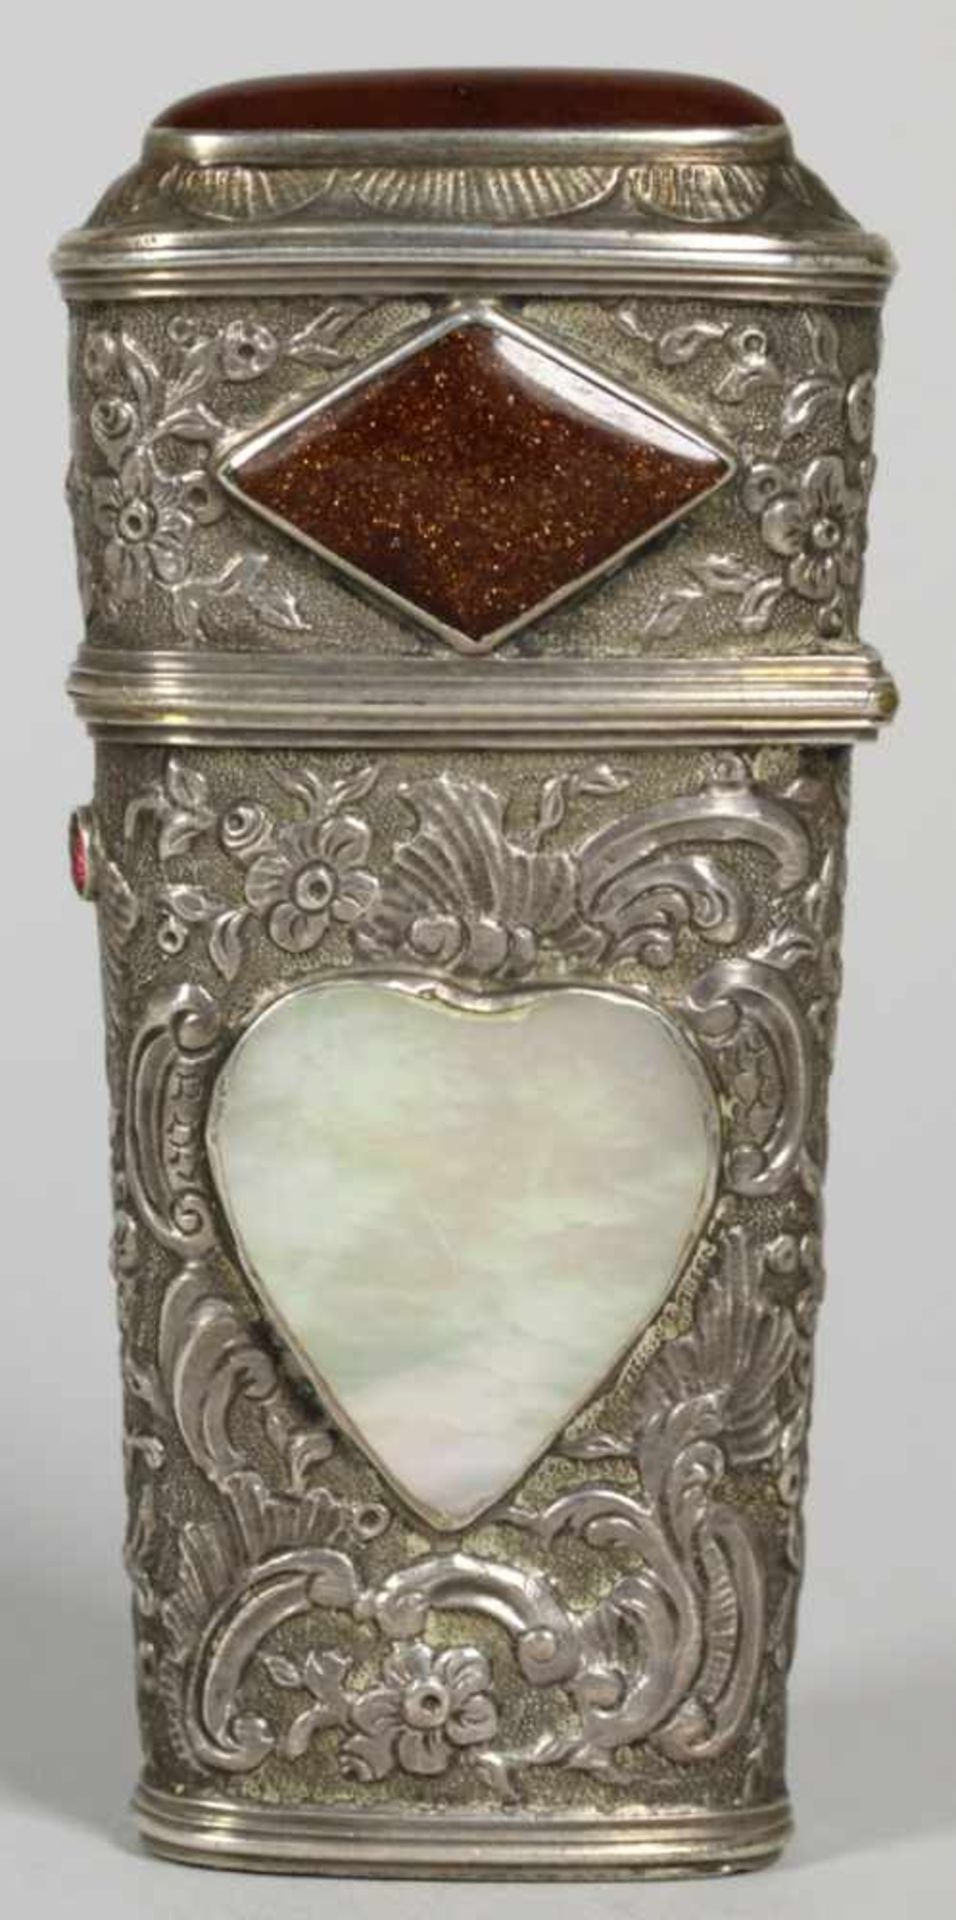 Reisezeug bzw. Necessaire, wohl Frankreich, um 1800, Silber, scharnierter Deckel, Wandungmit - Bild 3 aus 3